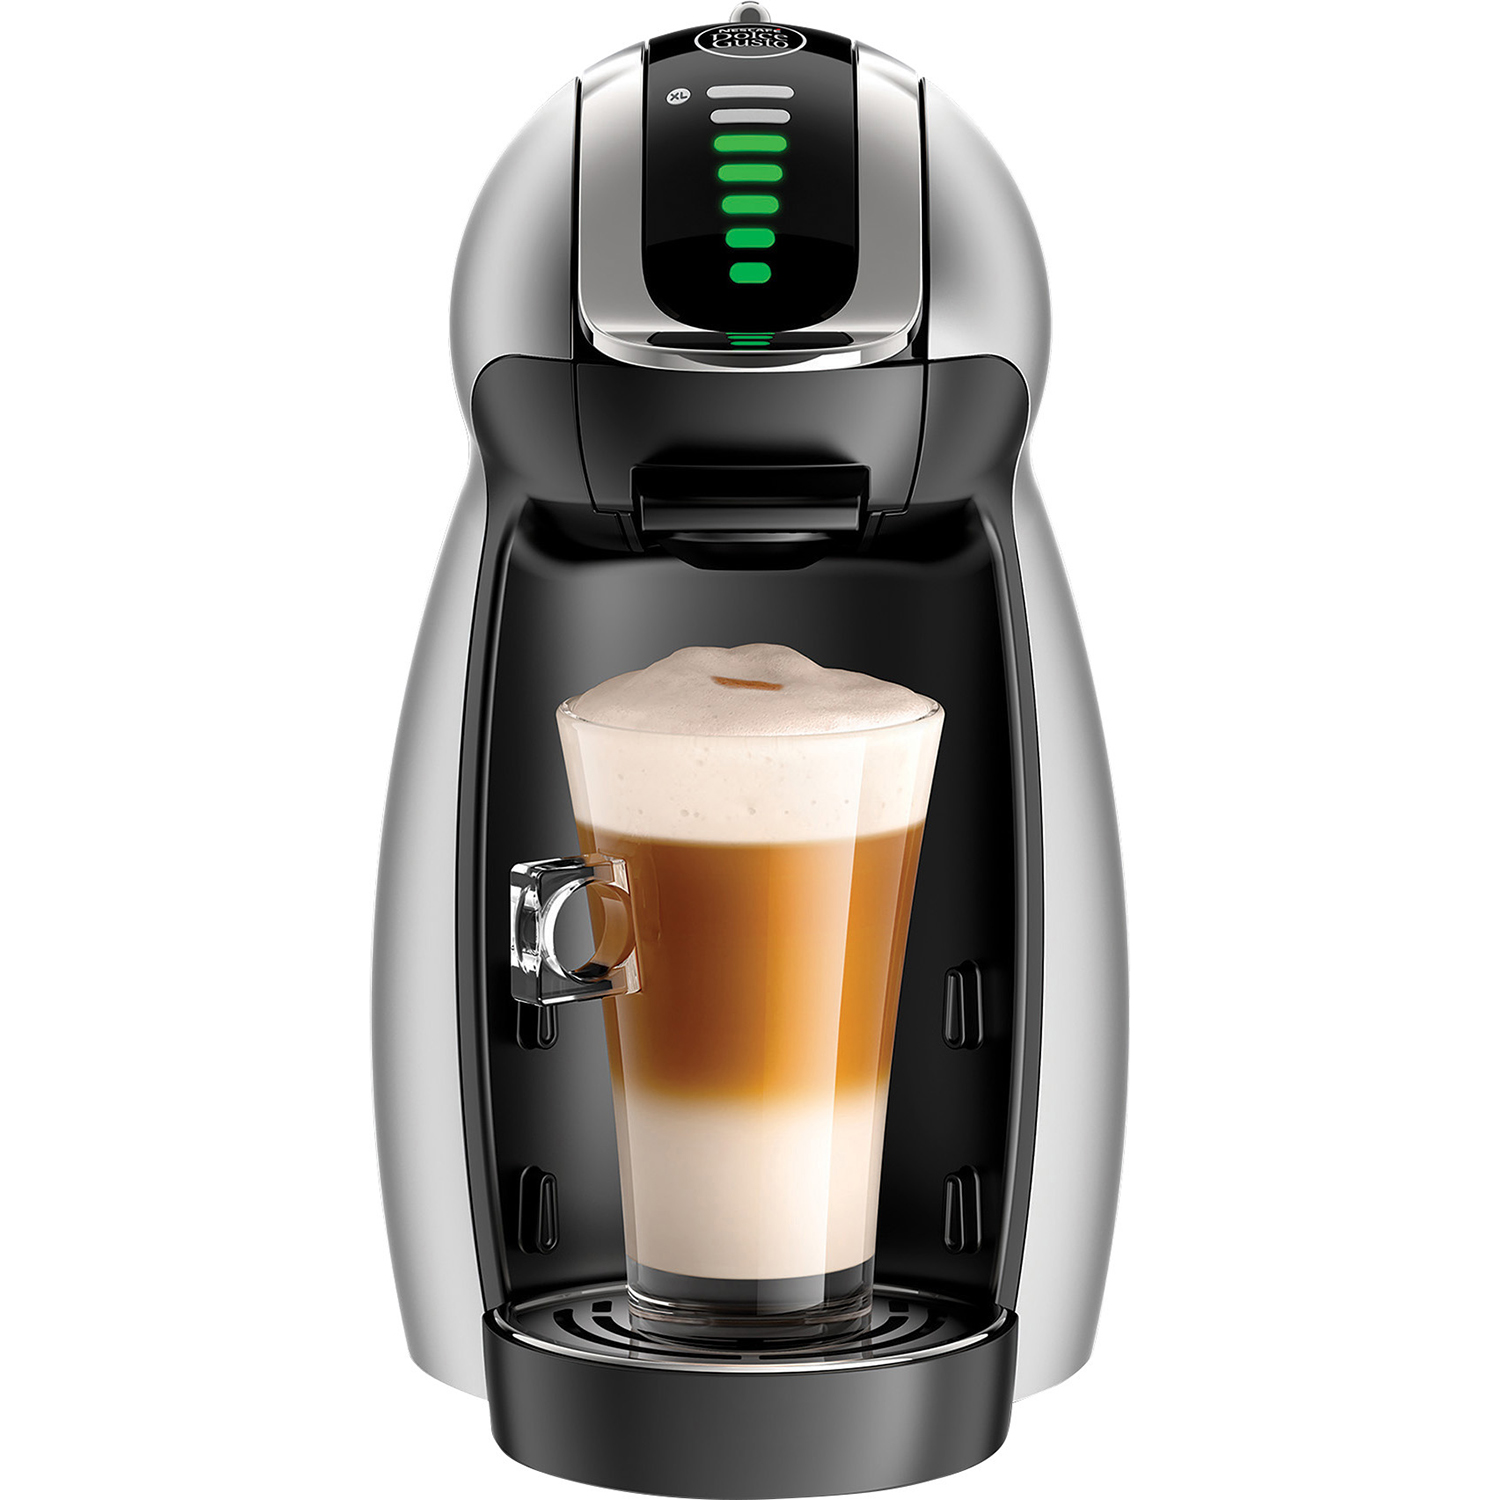 NESCAFE Dolce Gusto Genio 2 Coffee Machine, Single Serve Espresso and Cappuccino Pod Machine - image 1 of 6